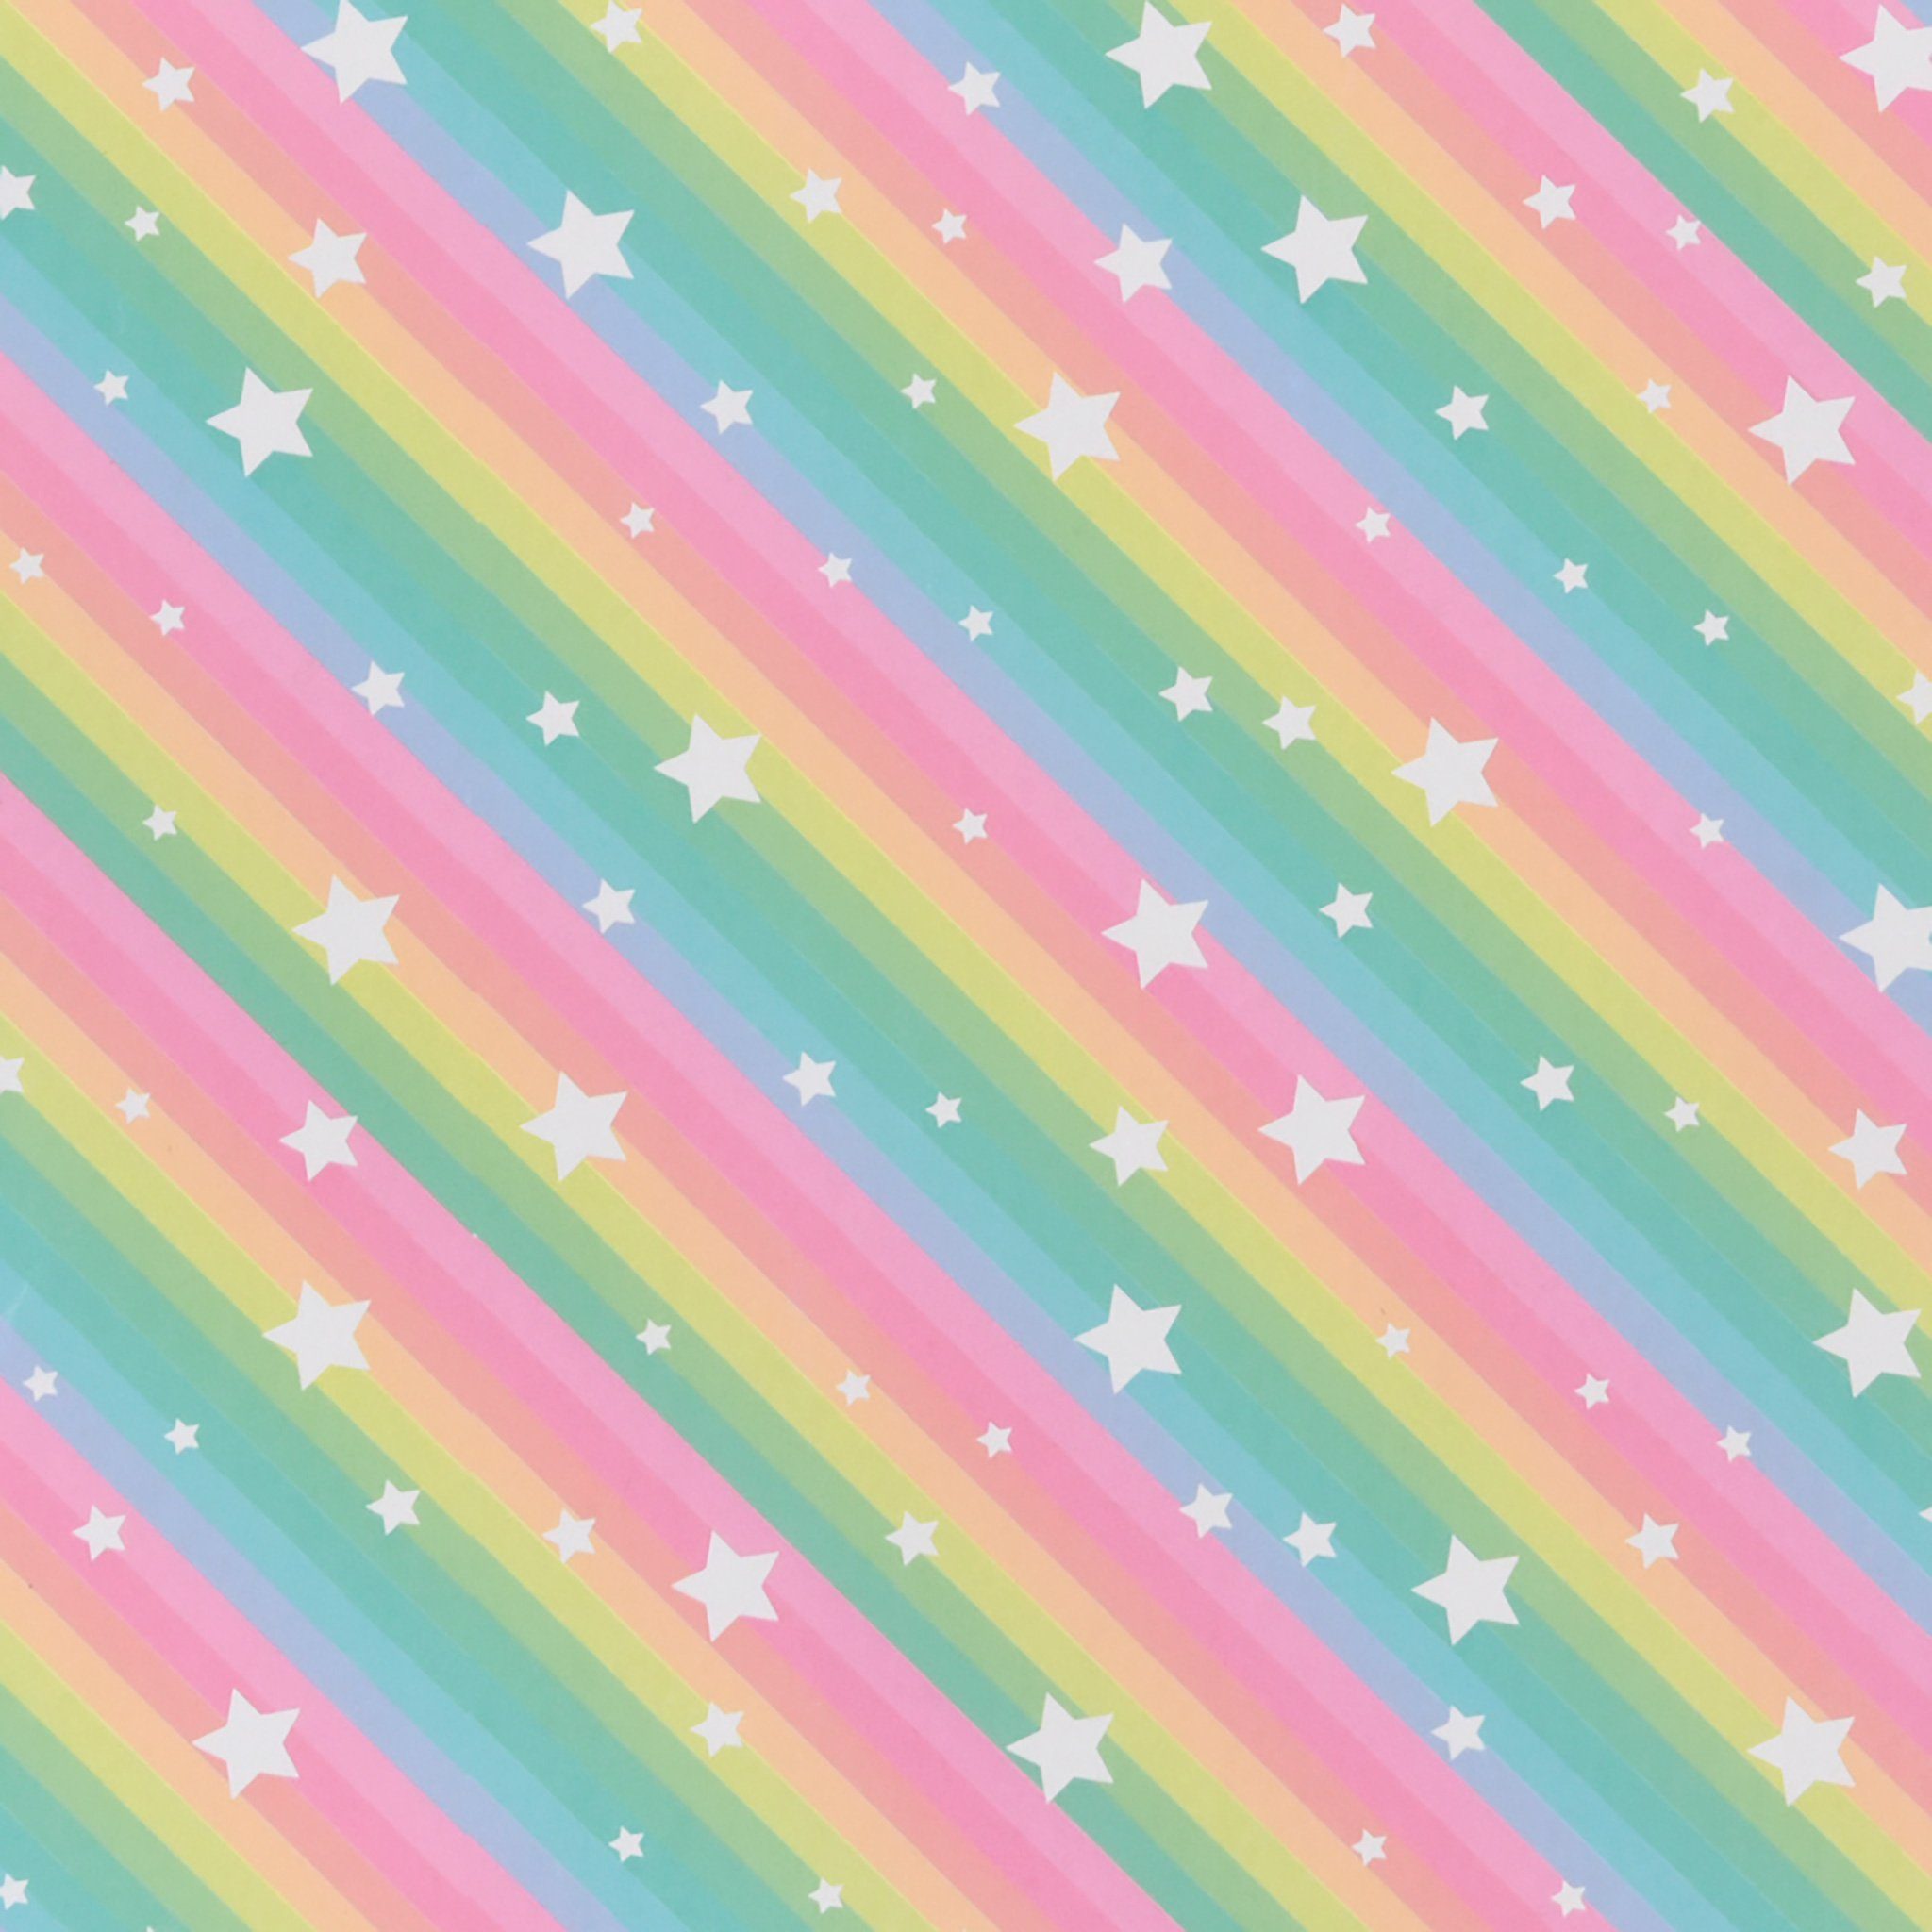 Star Geschenkpapier, Geschenkpapier Regenbogen mit Stern Motiv 70cm x 2m Rolle Bunt